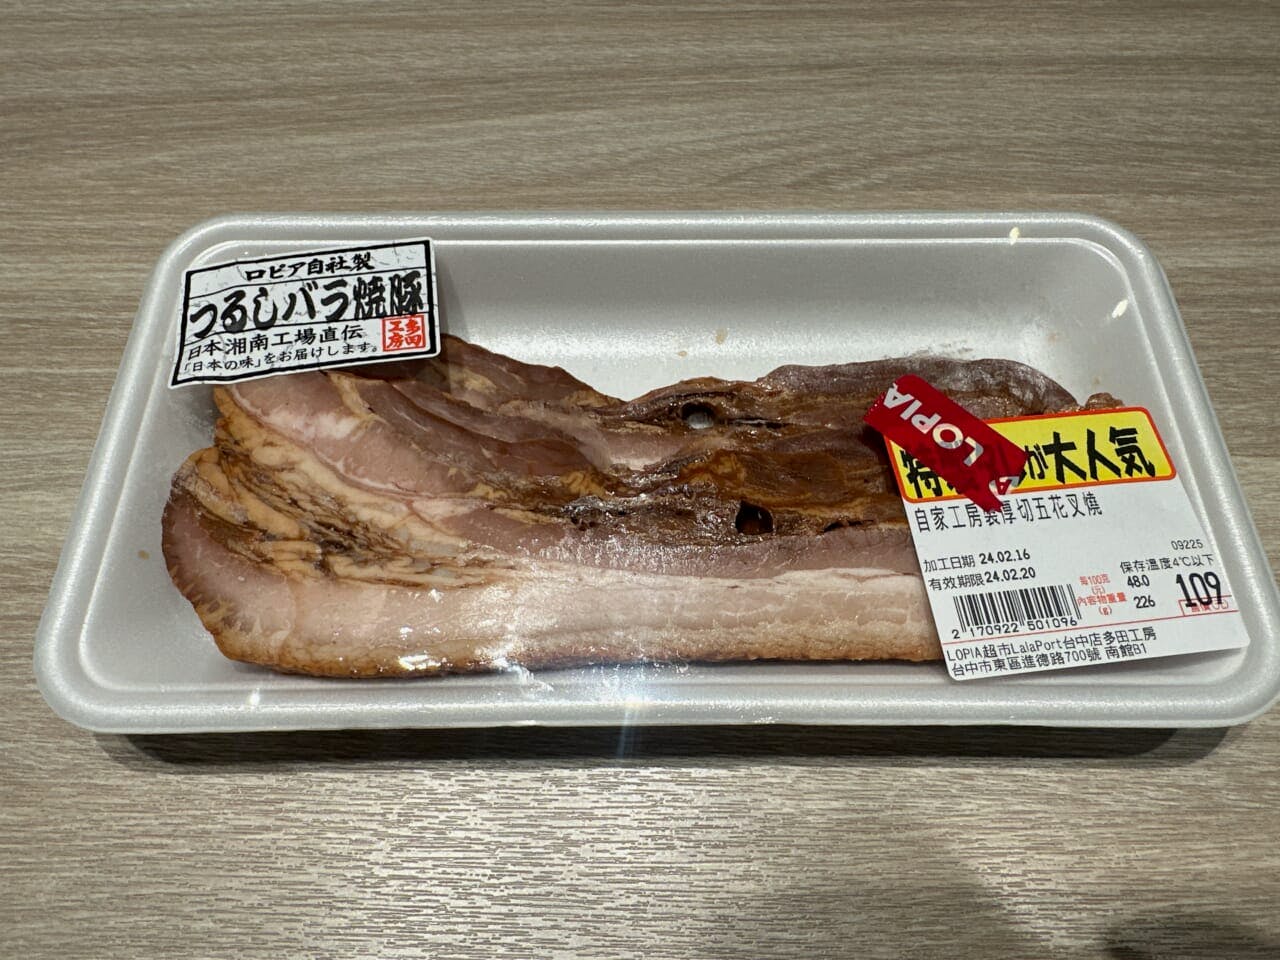 店頭で燻製し販売する加工肉の一例